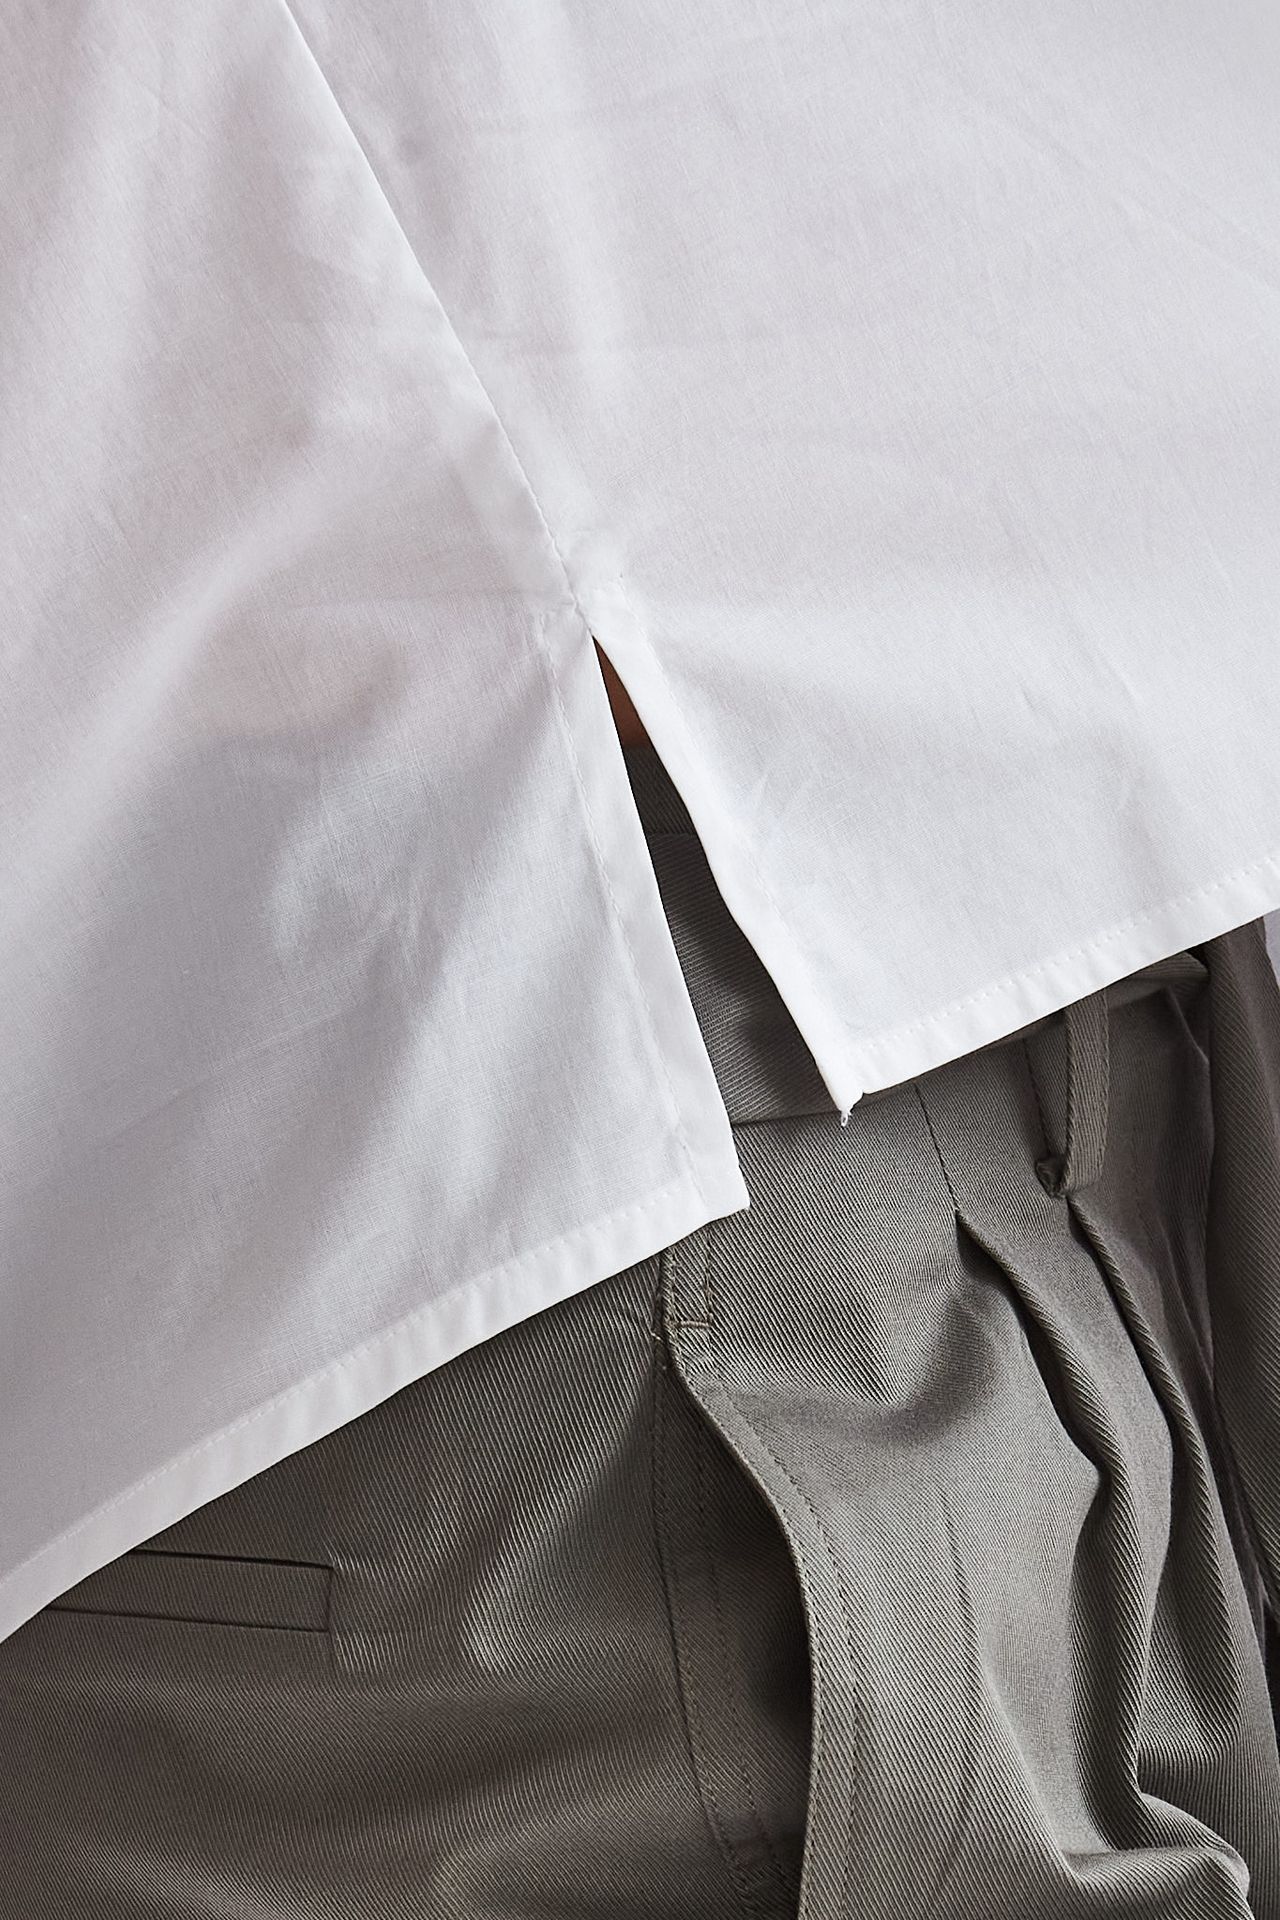 Camicia coreana in cotone bianco